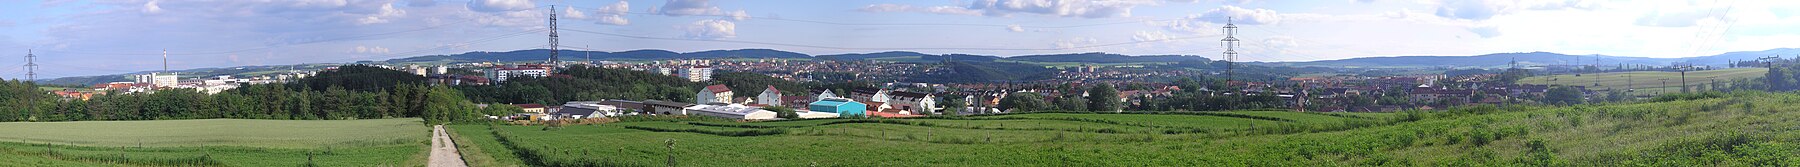 Panorama Třebíče od severu; v pozadí masiv sopečného původu jižně od města.